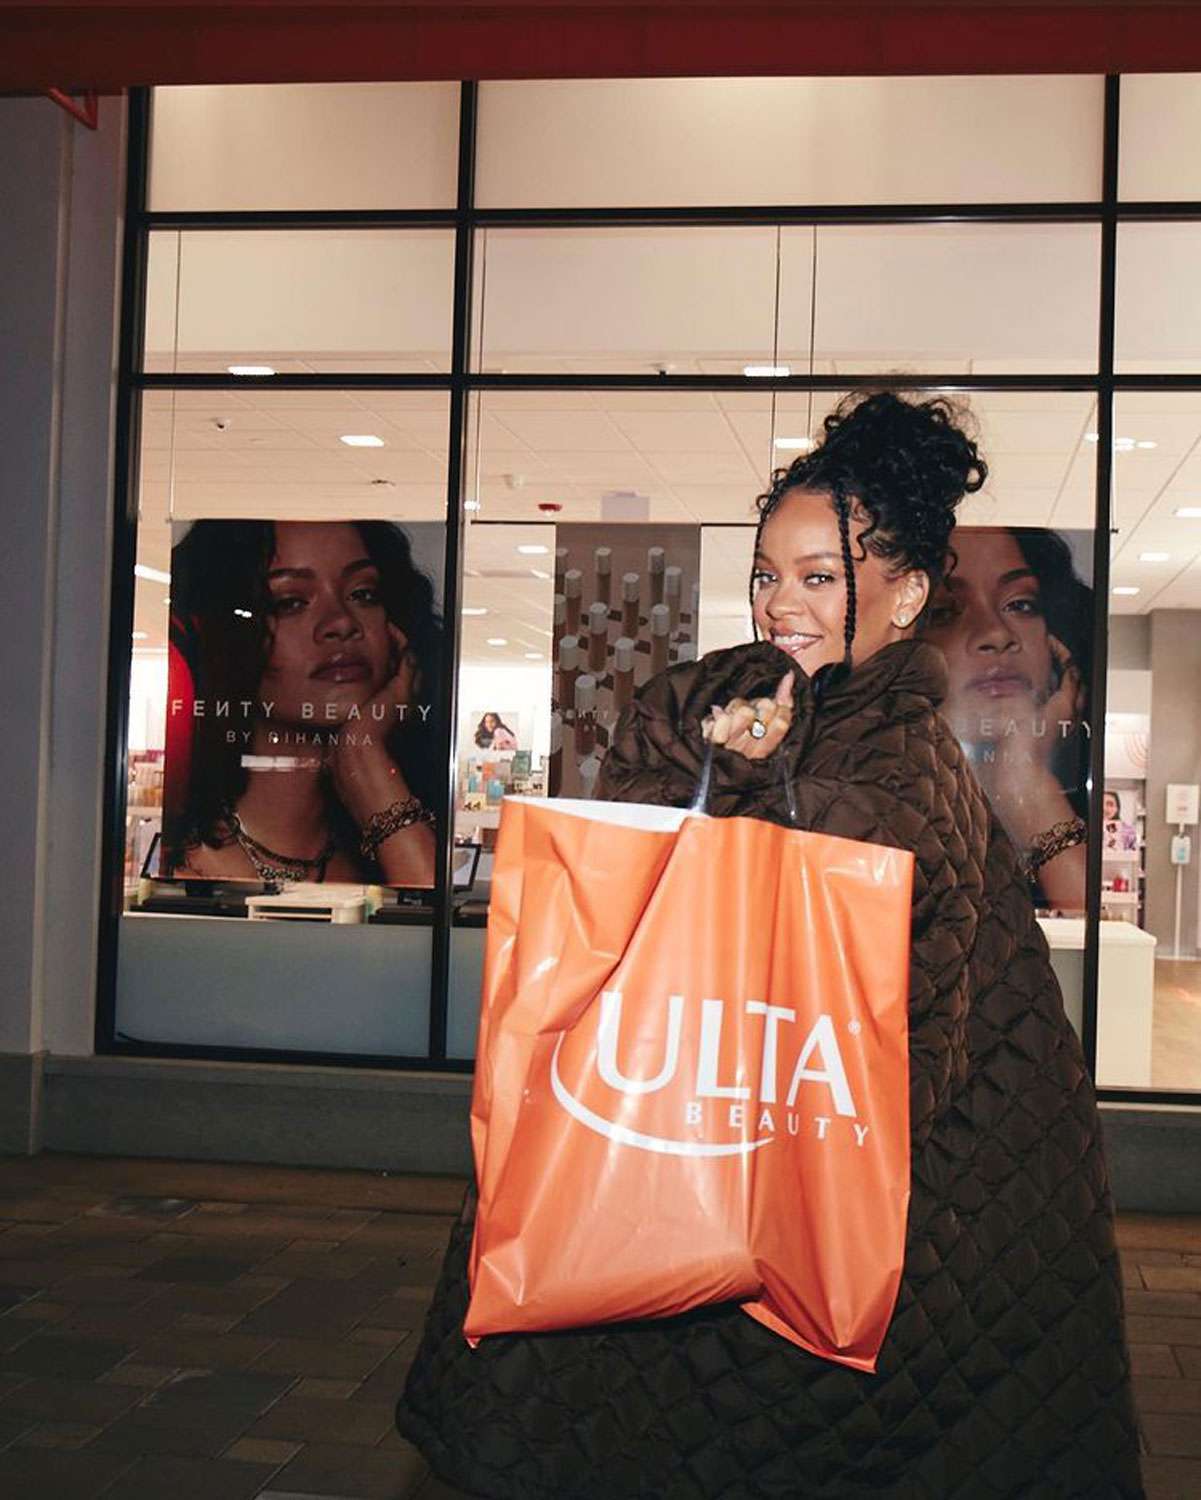 Rihanna, Otopark Fotoğrafı Op: 'In My Ulta Bag' ile Ulta'ya Fenty Beauty Getirdiğini Duyurdu